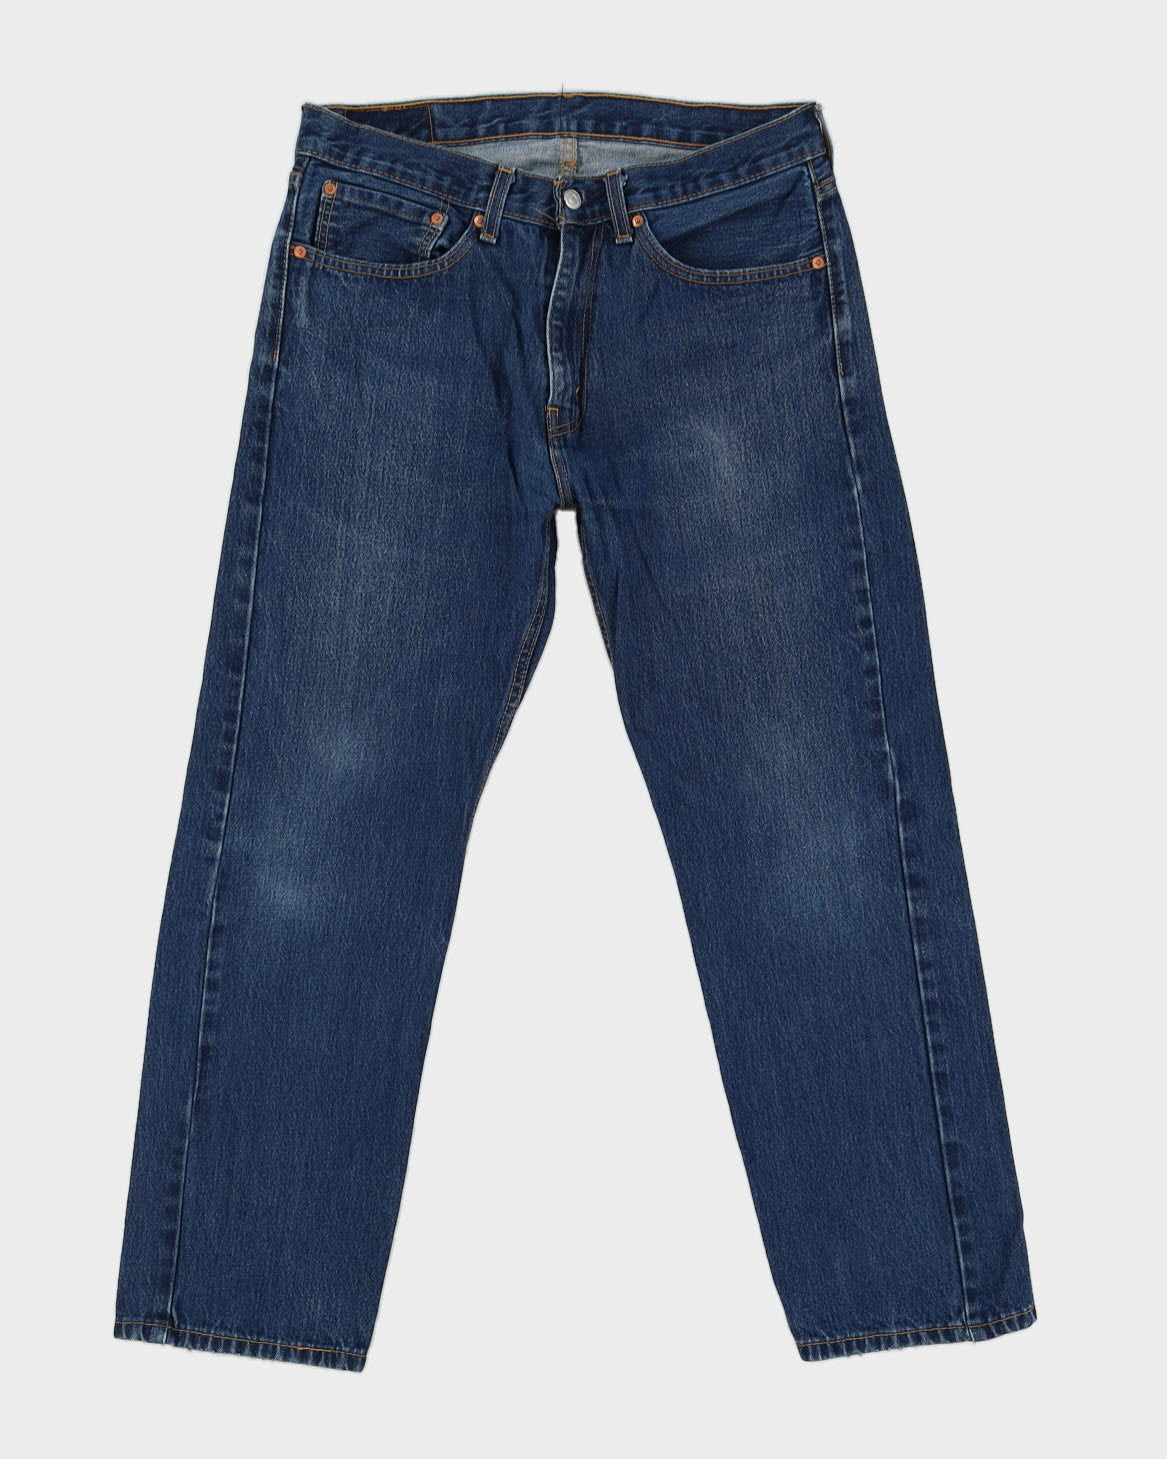 Levi's 505 Blue Jeans - 34 L30